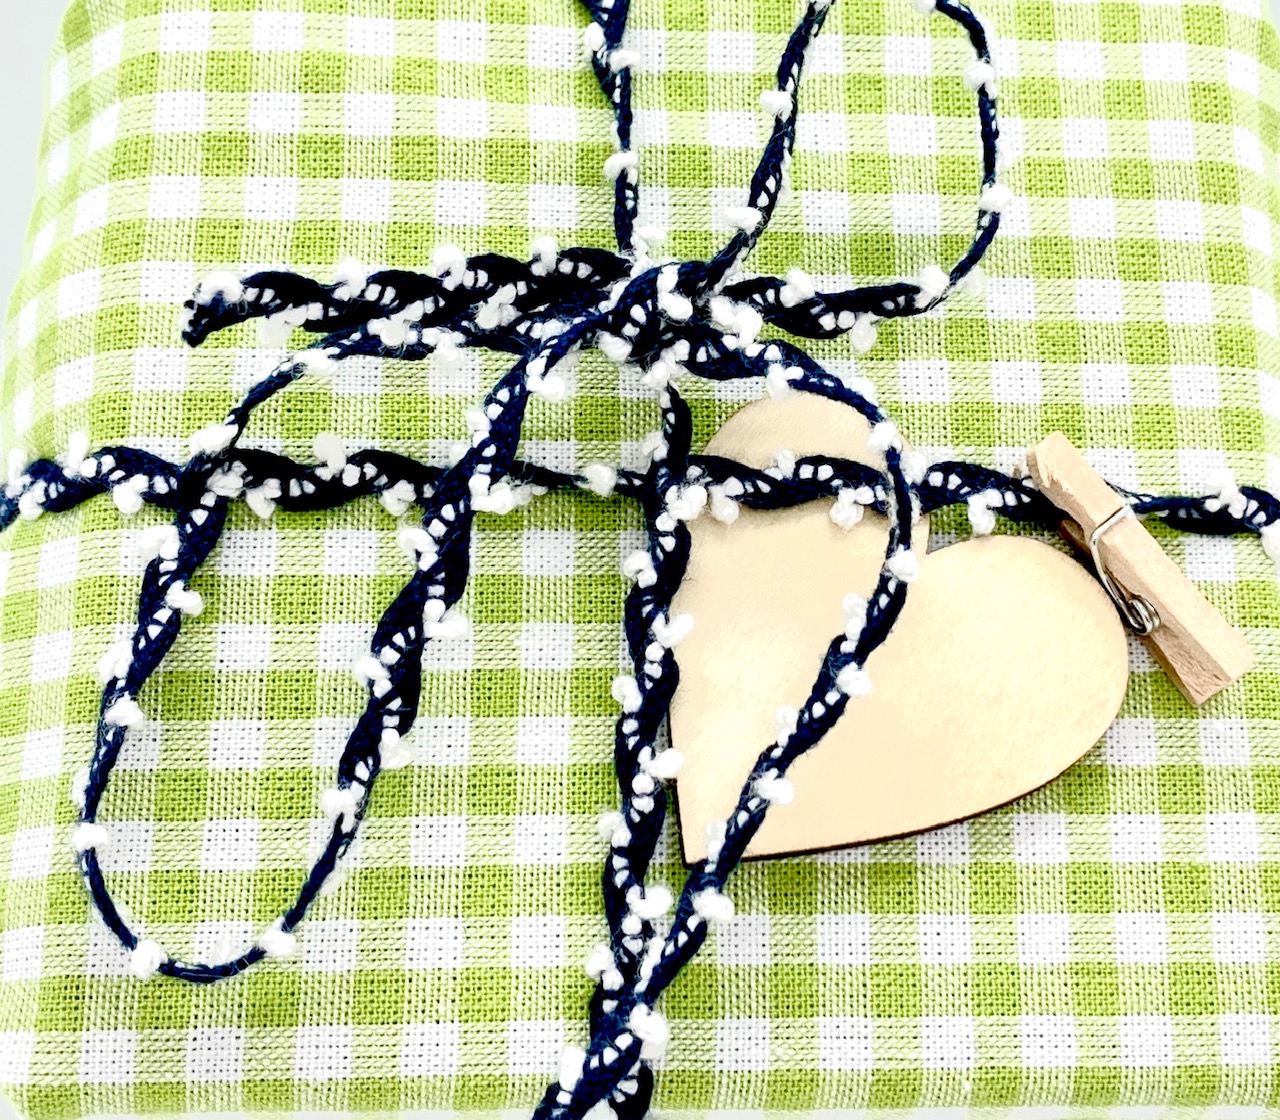 BIO-Baumwollband Dunkelblau/Weiß, 5 mm breit, 15 Meter lang